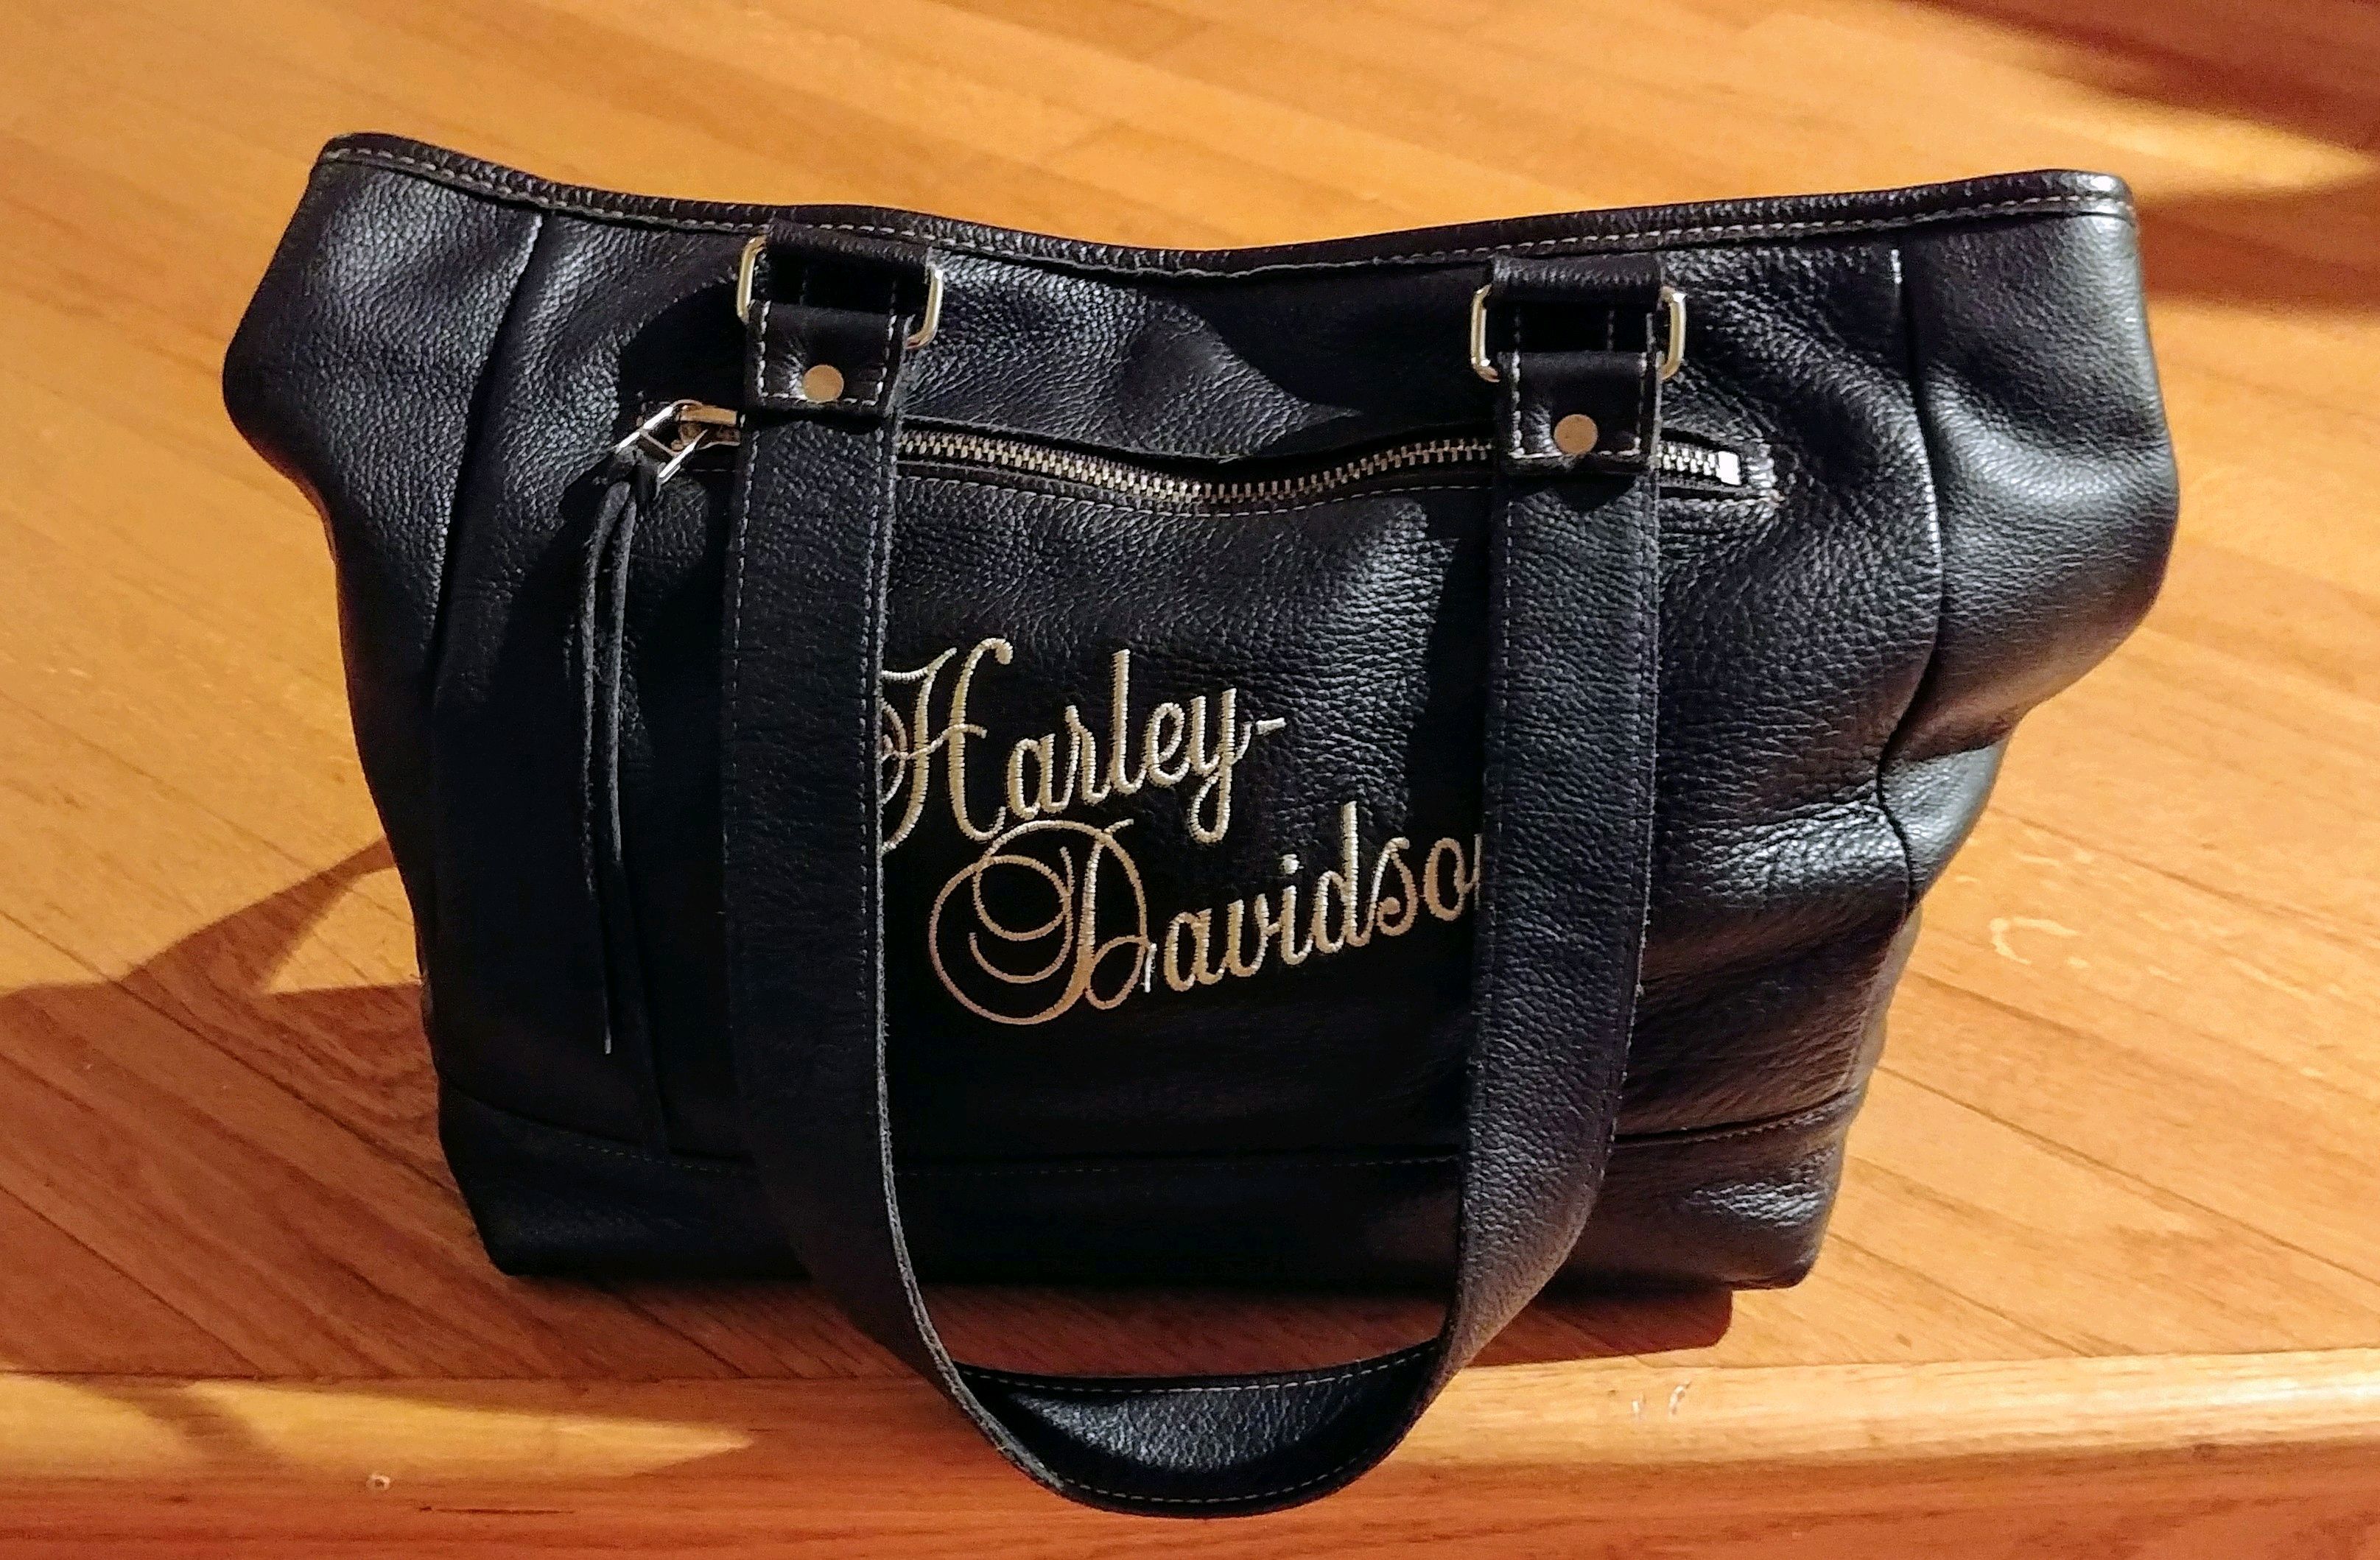 Harley Davidson pocketbook